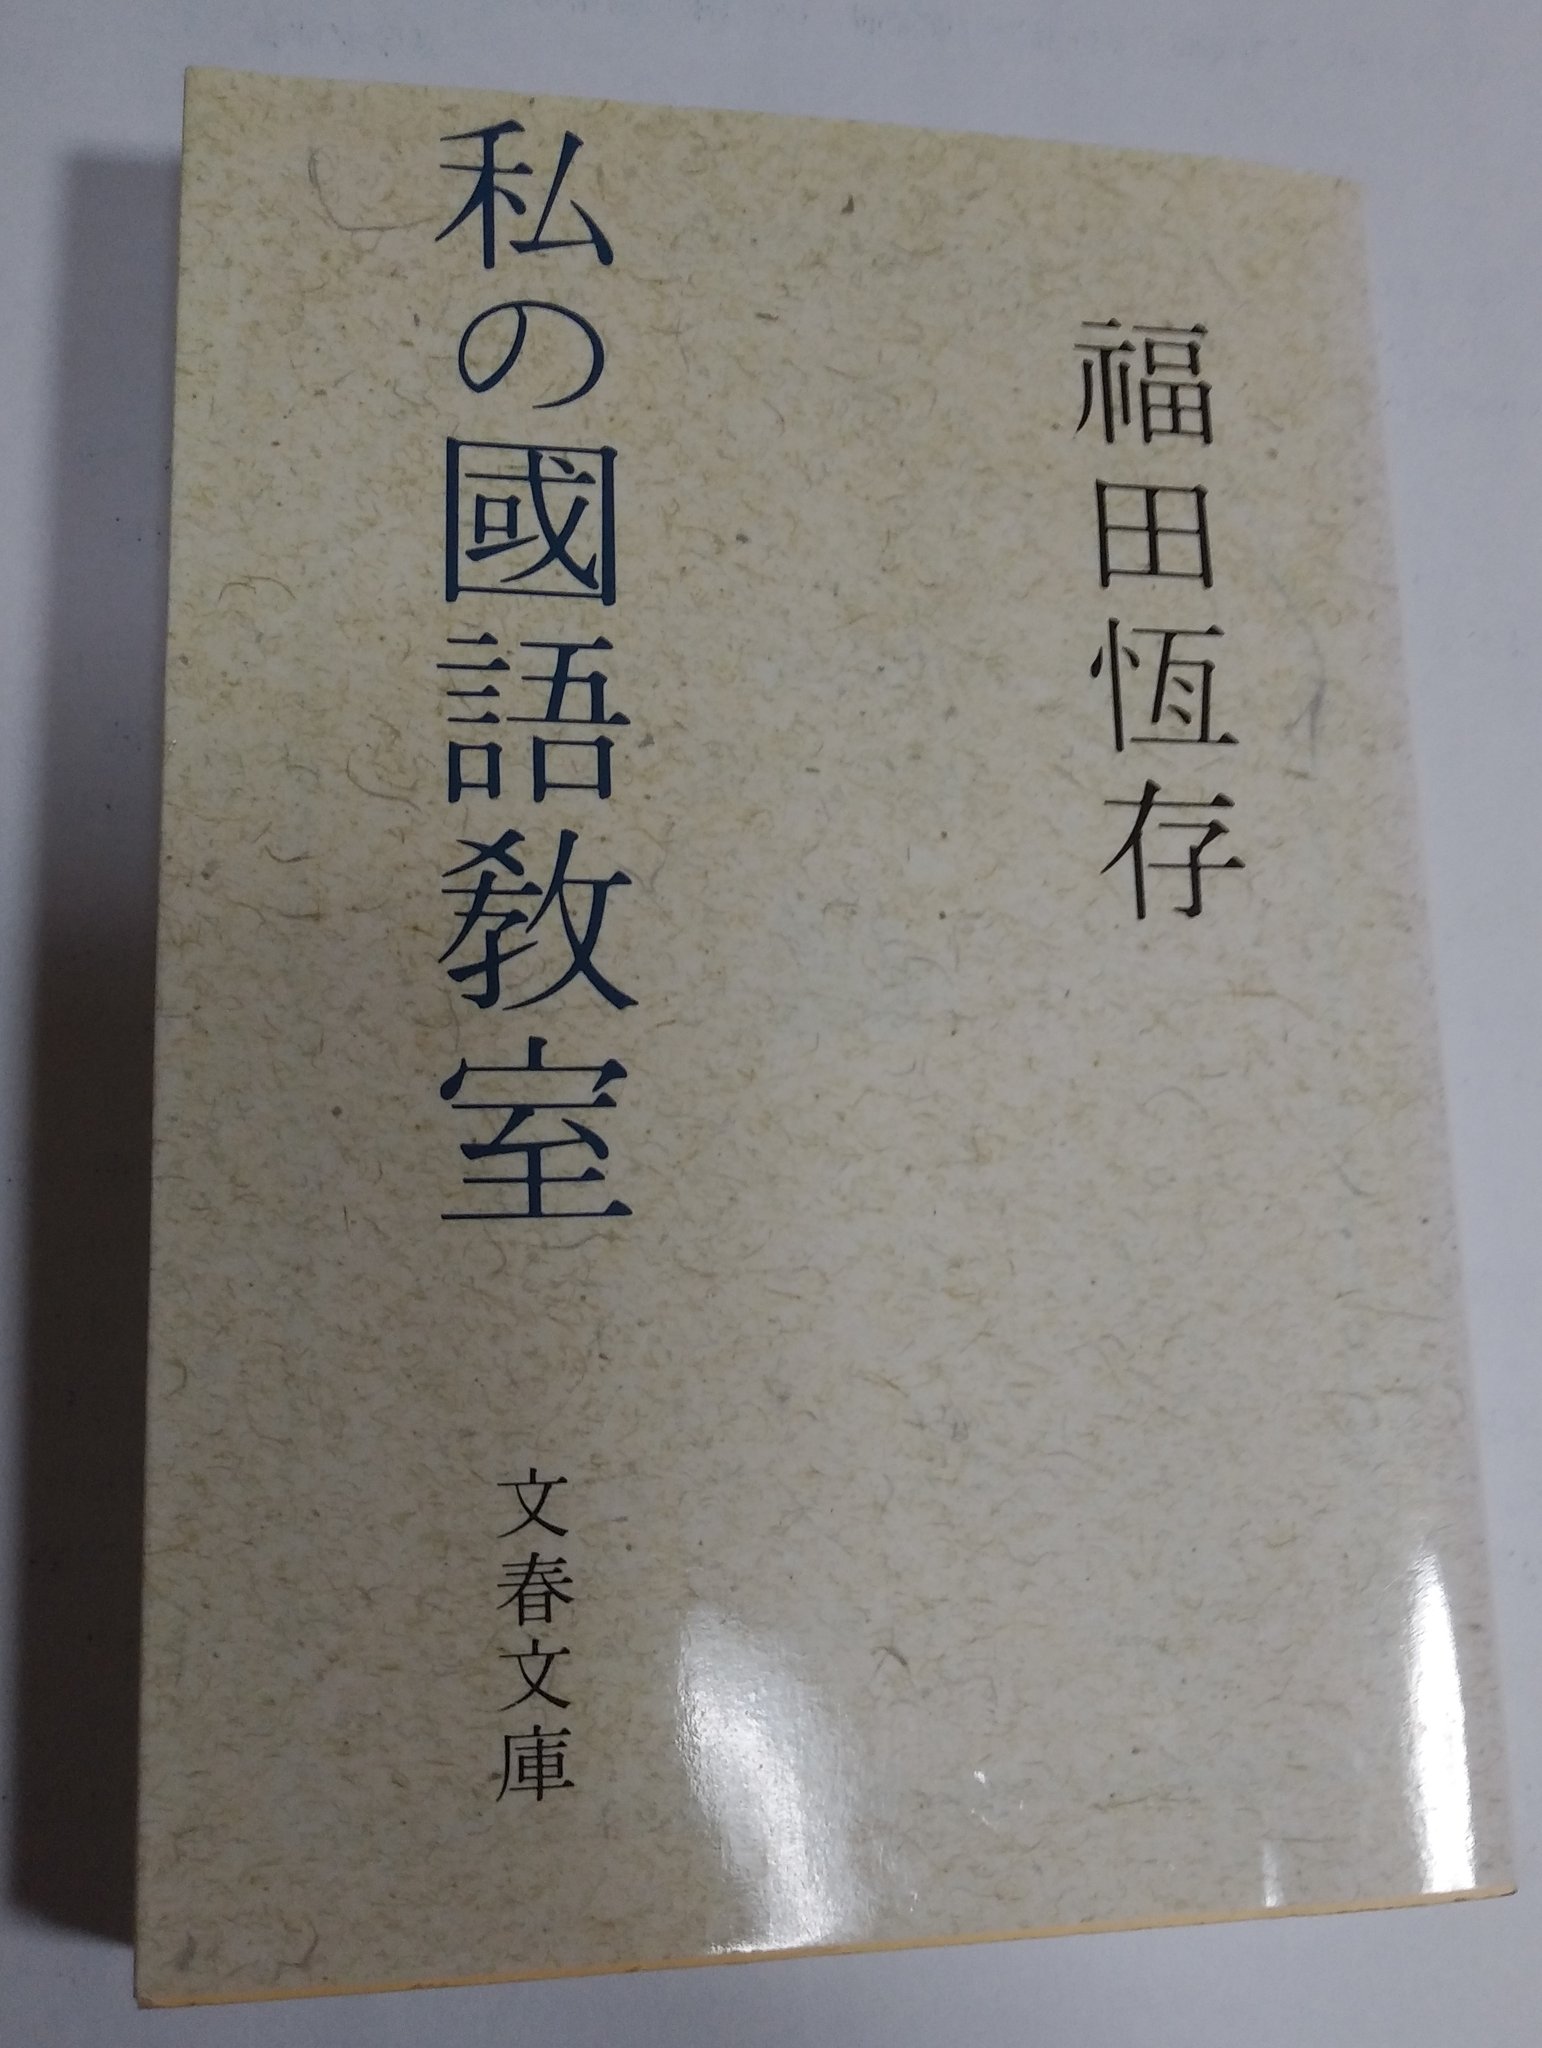 刺田比古神社 岡の宮 公式 祝詞は万葉仮名 業界紙は歴史的仮名遣いですので 色々と教えられることの多い本です Twitter